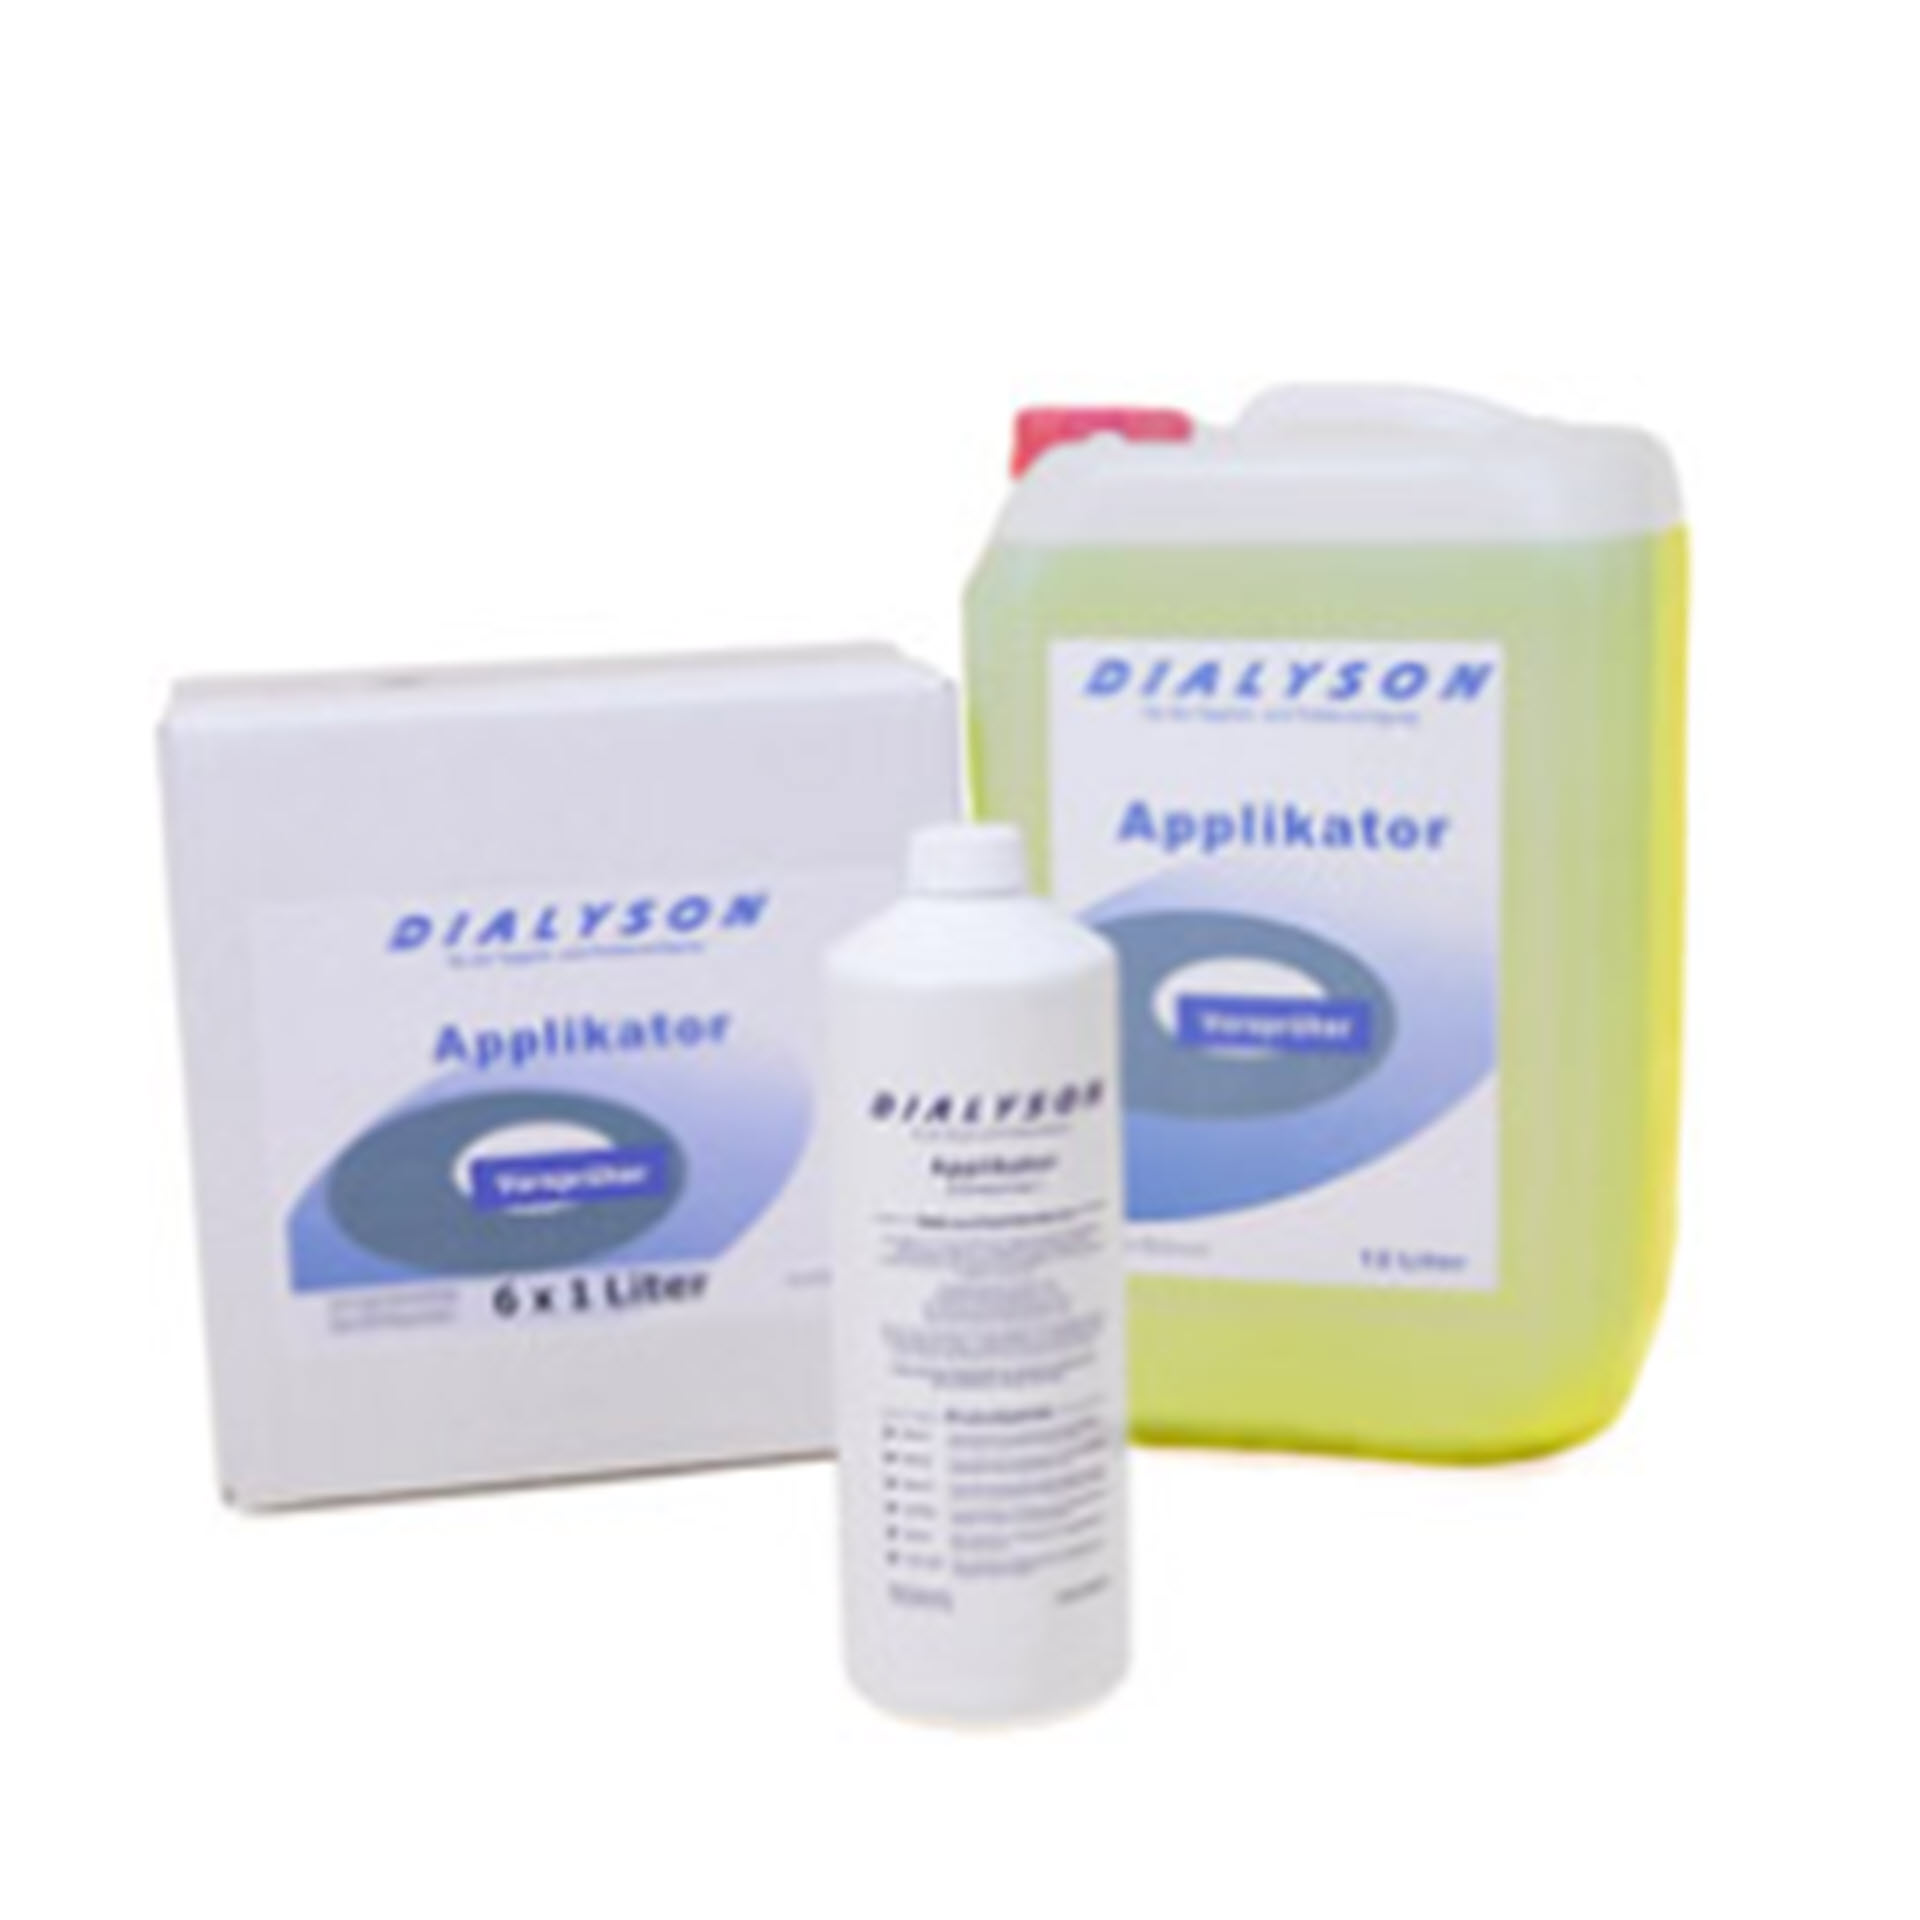 Dialyson Applikator - Vorsprühkonzentrat - 1 Liter Rundflasche